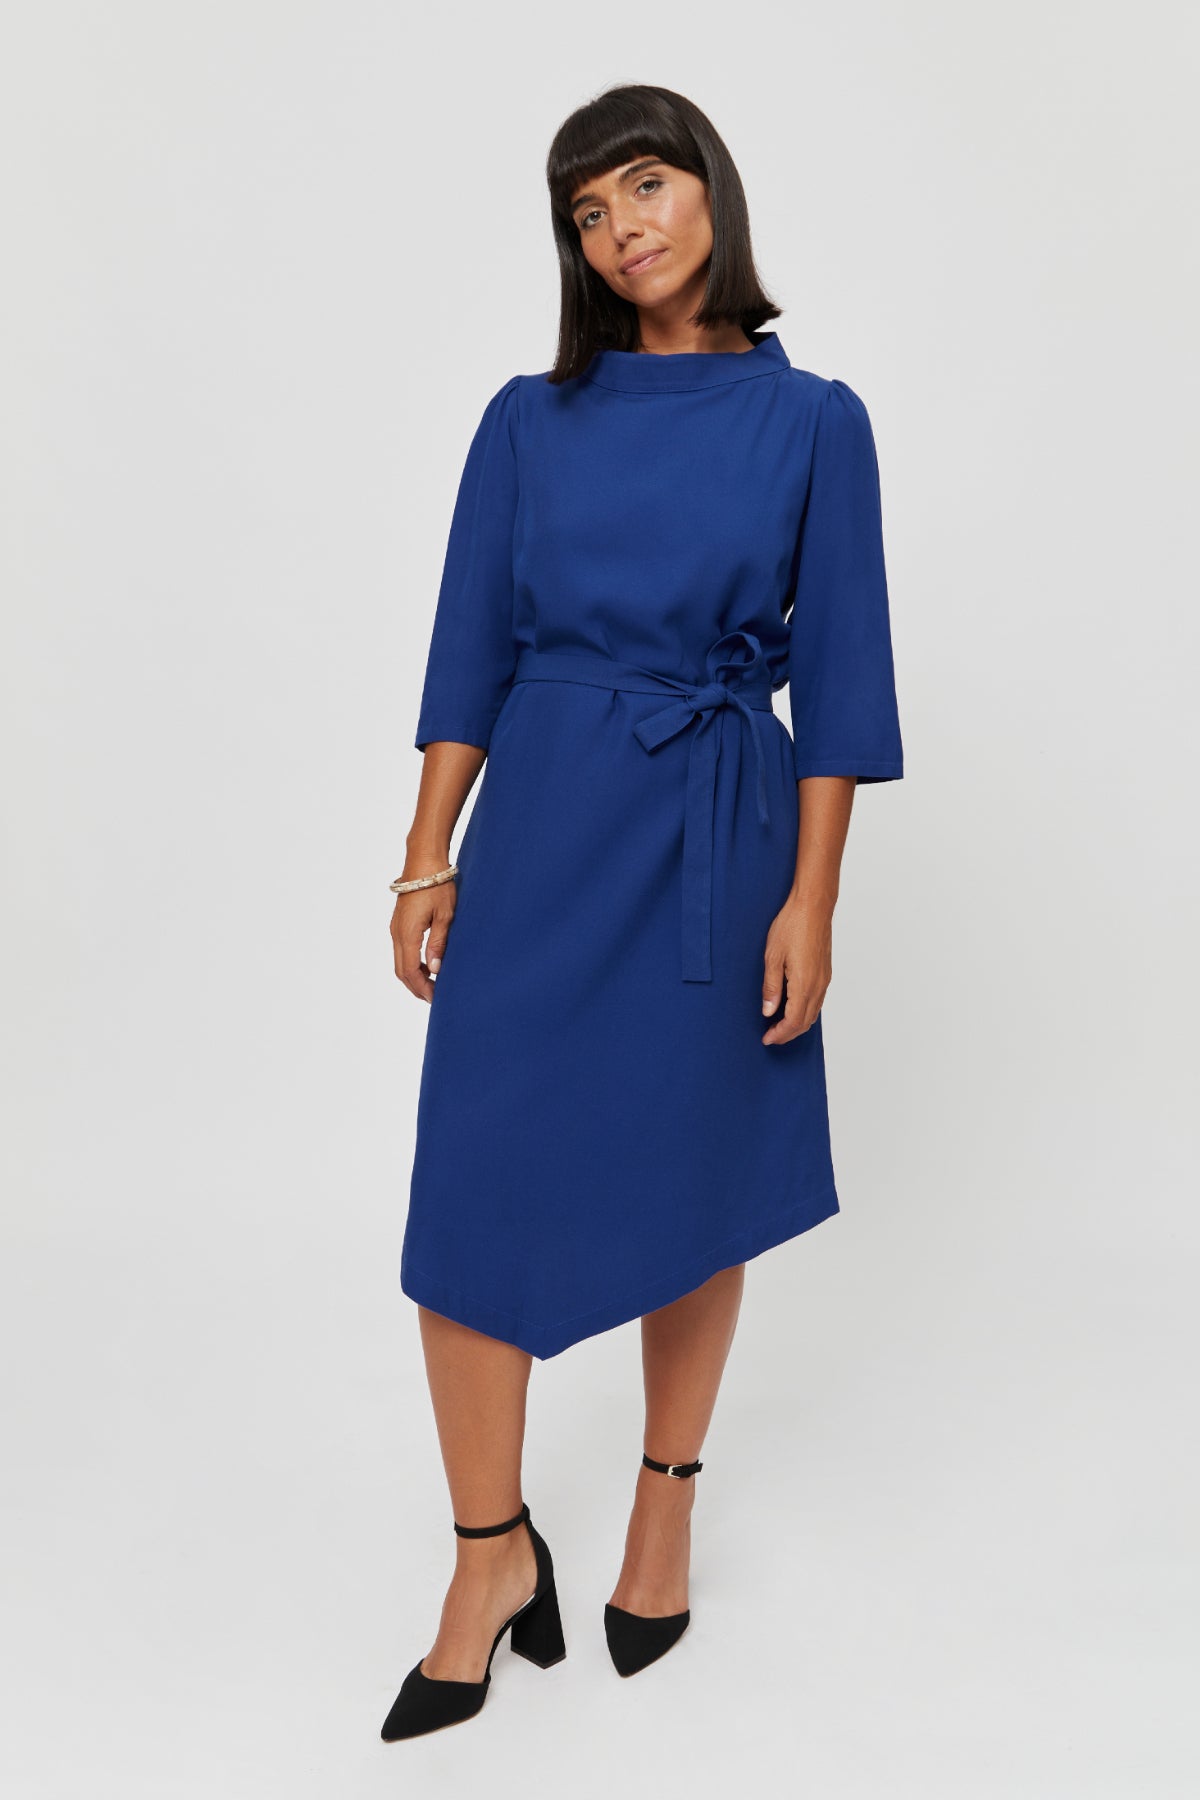 Blau Elegantes Business Kleid mit Stehkragen - AYANI